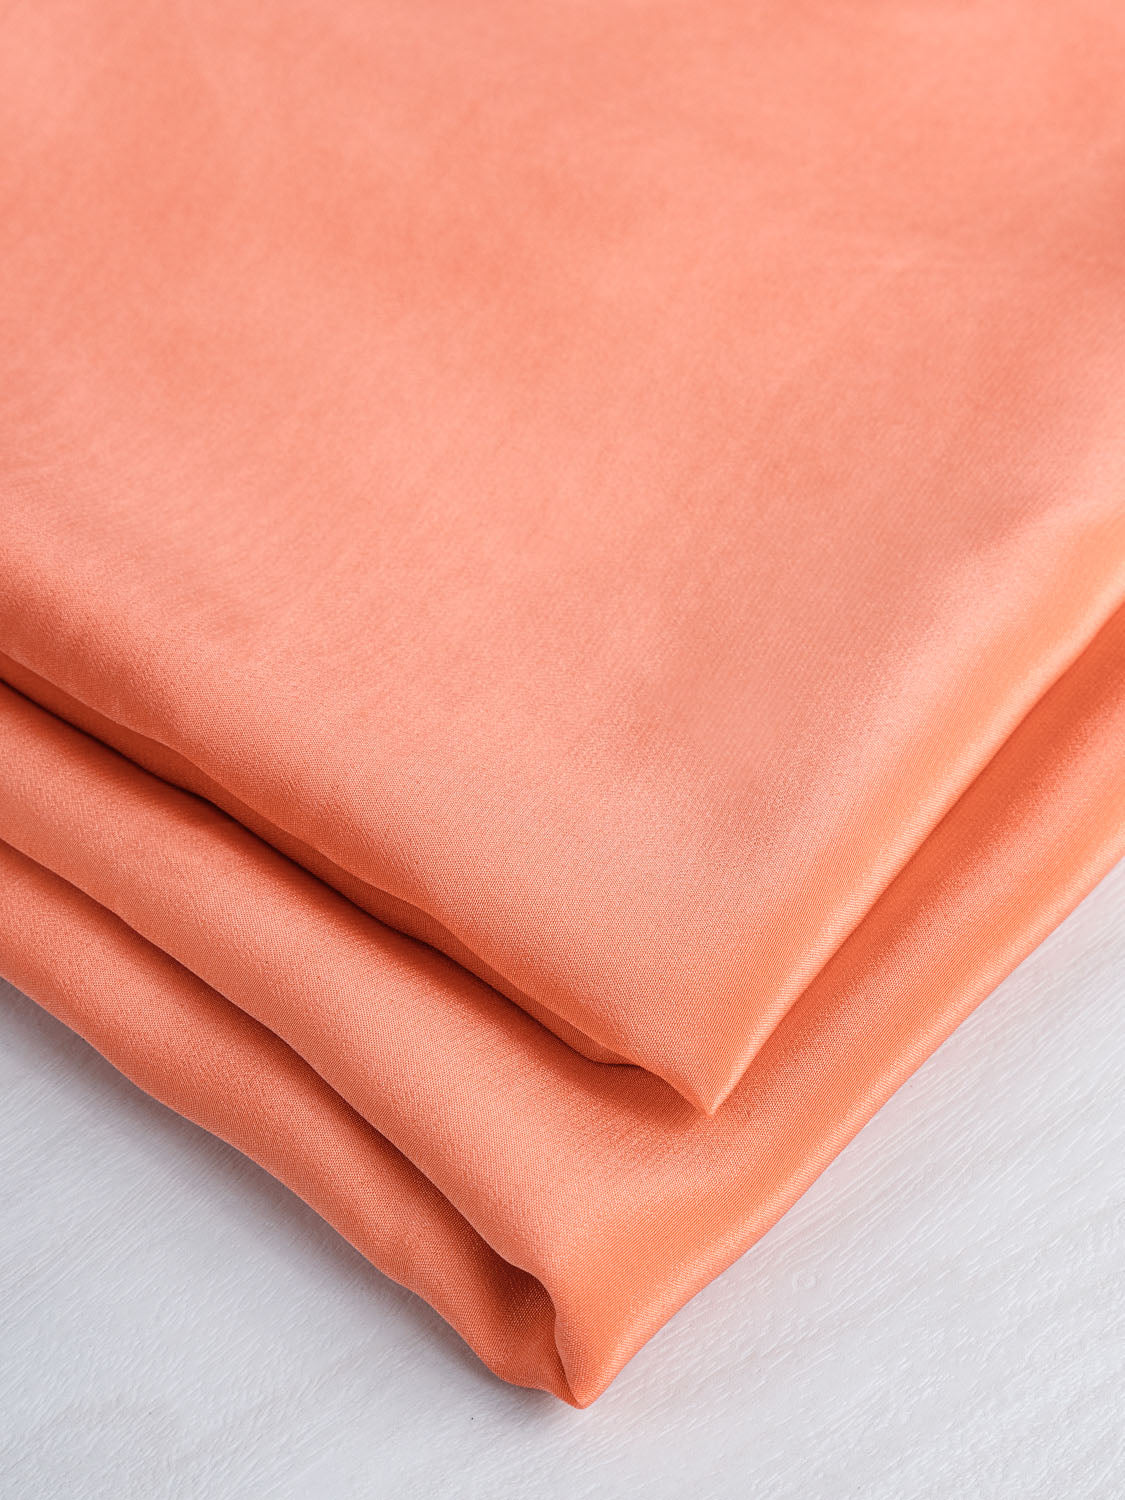 Silk Crepe de Chine Deadstock - Cantaloupe | Core Fabrics